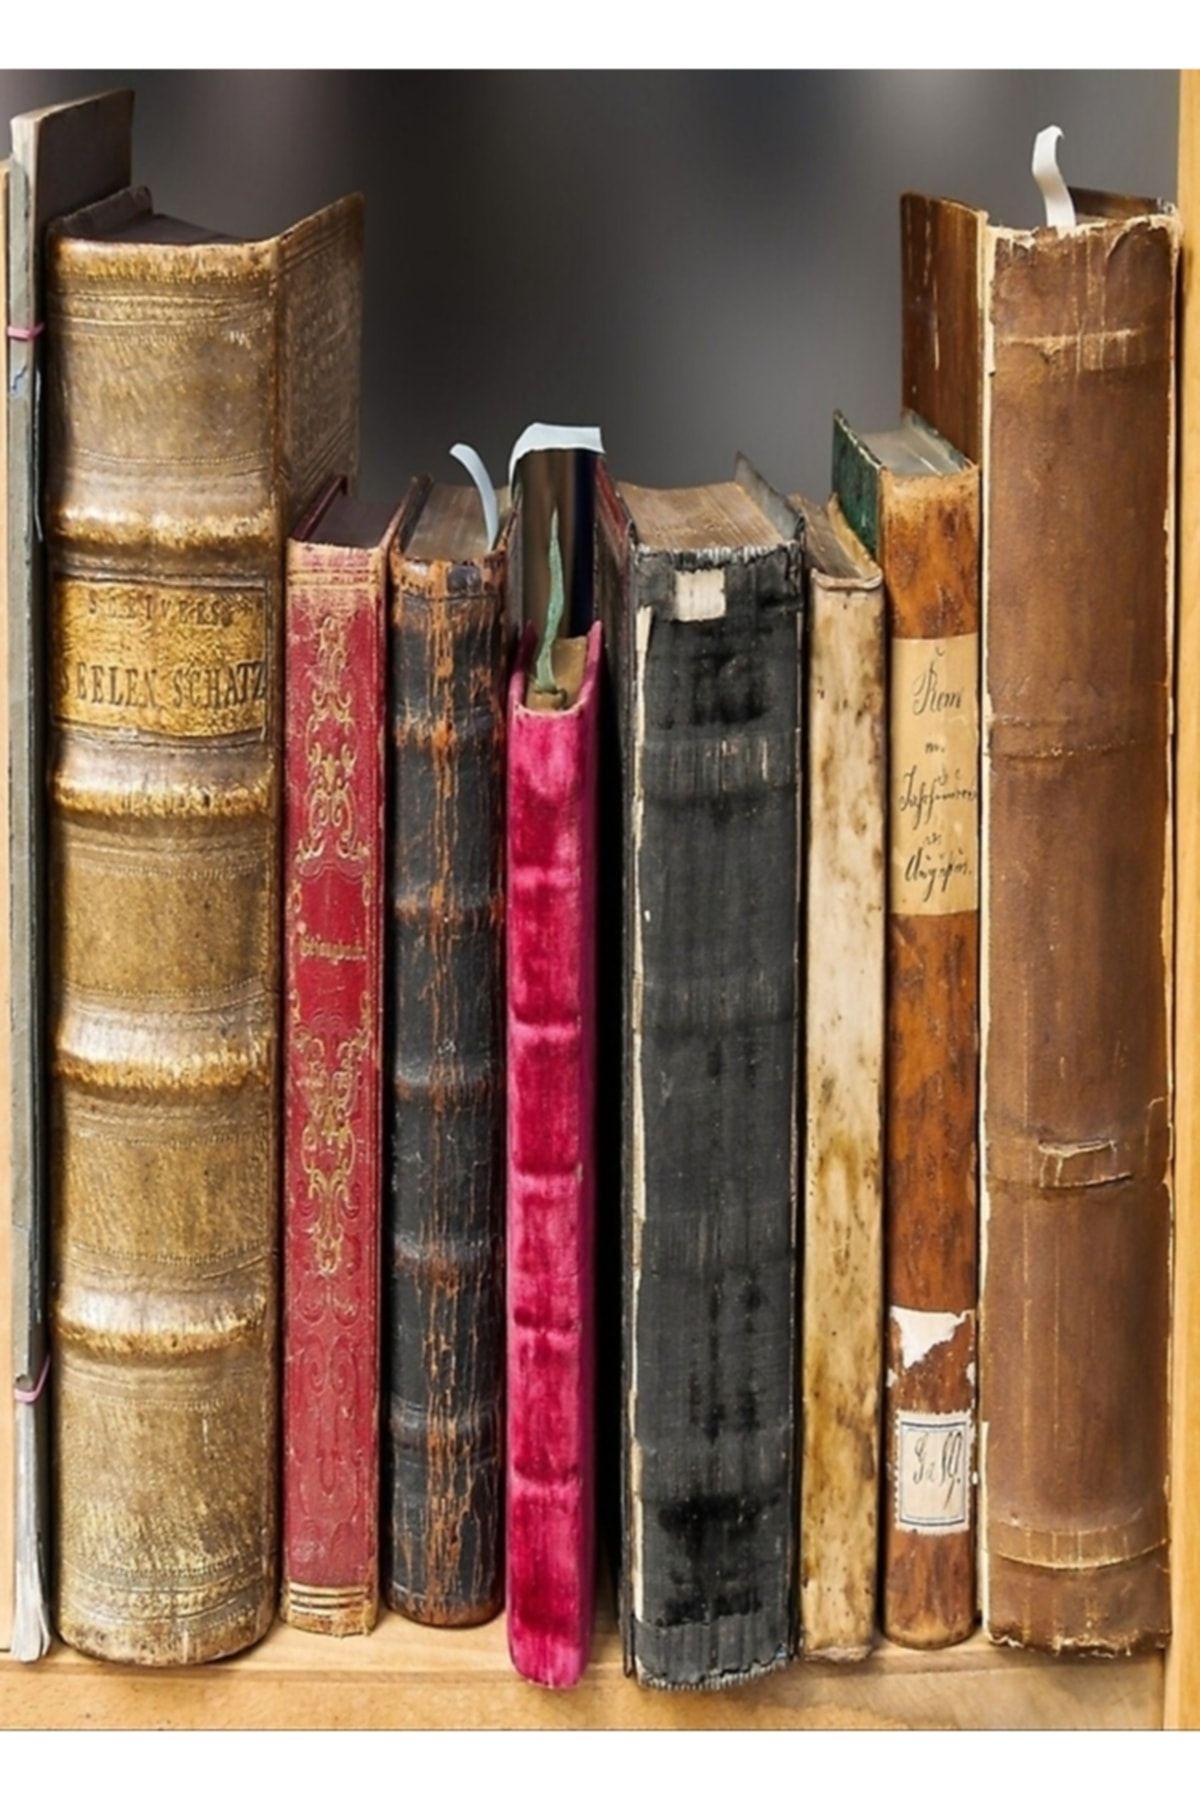 Universal Kitaplar Eski Edebiyat Sayfaları Kitap Kitaplık Tablo Ahşap Poster Dekoratif